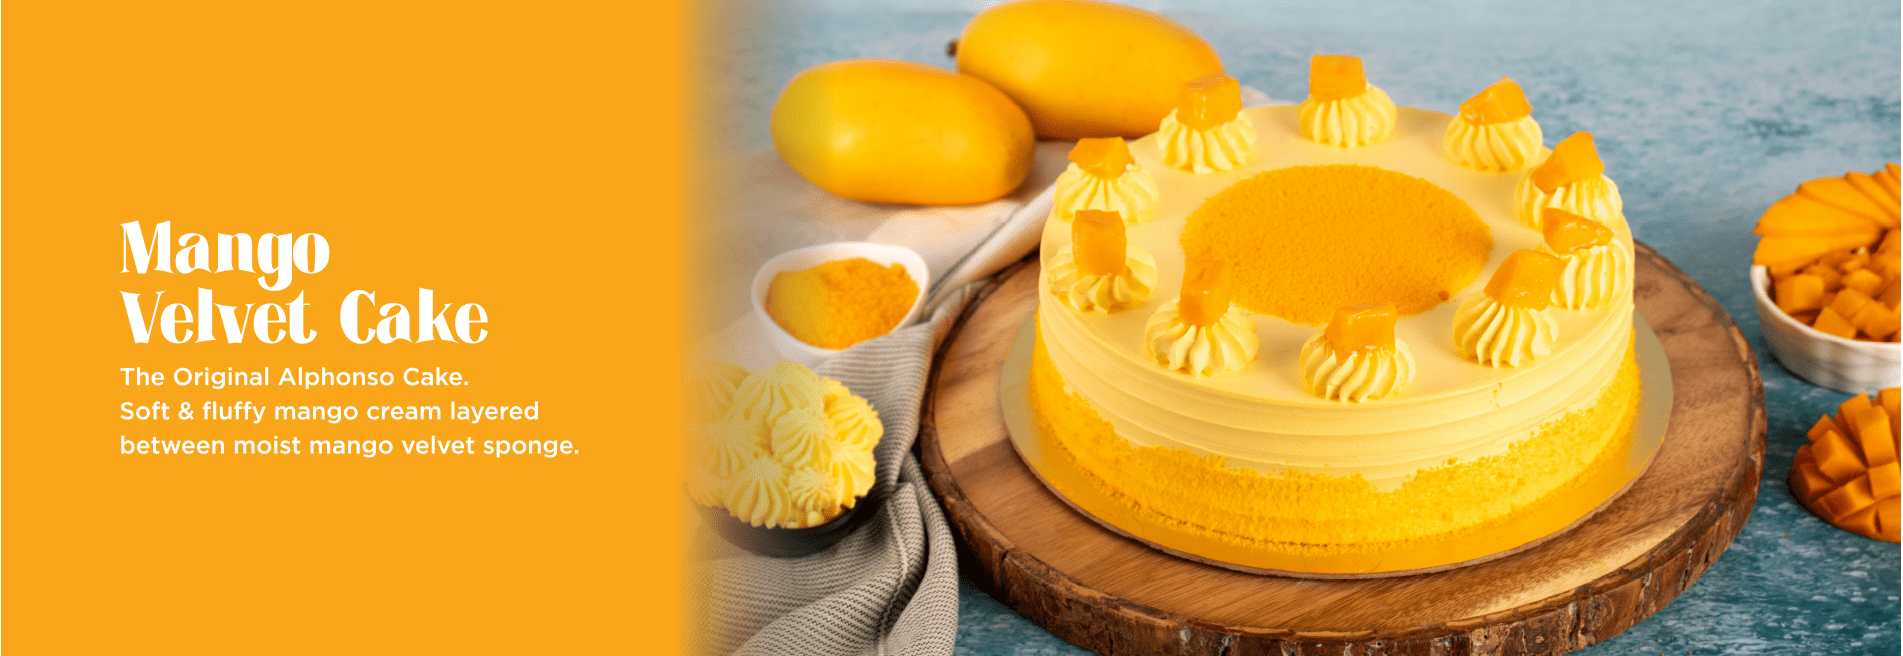 Mango Velvet Cake